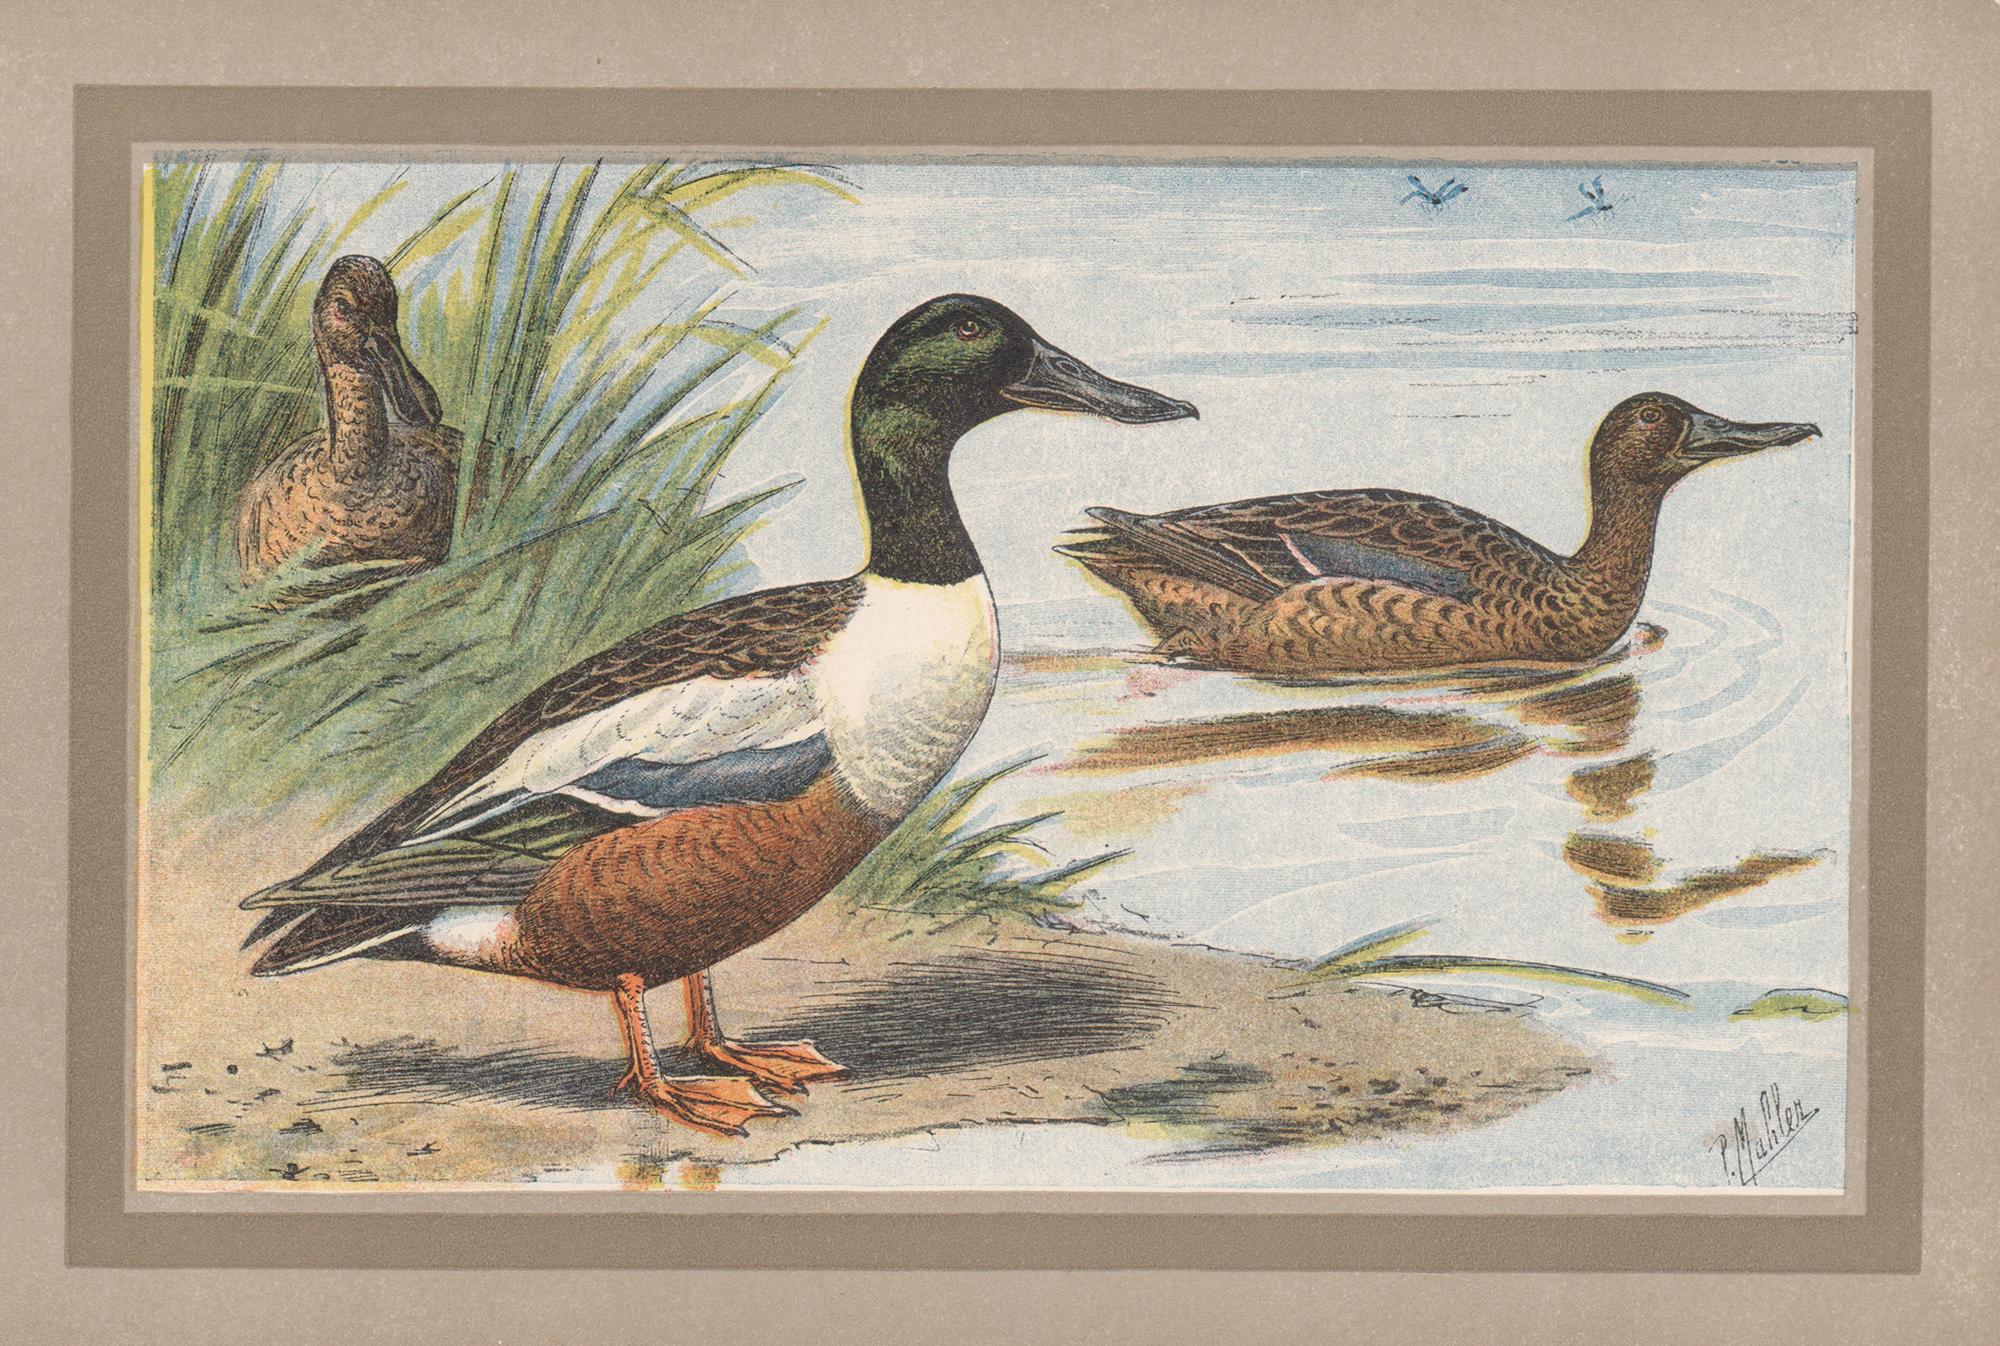 P. Mahler Print - Northern Shoveler, French antique bird duck art illustration print